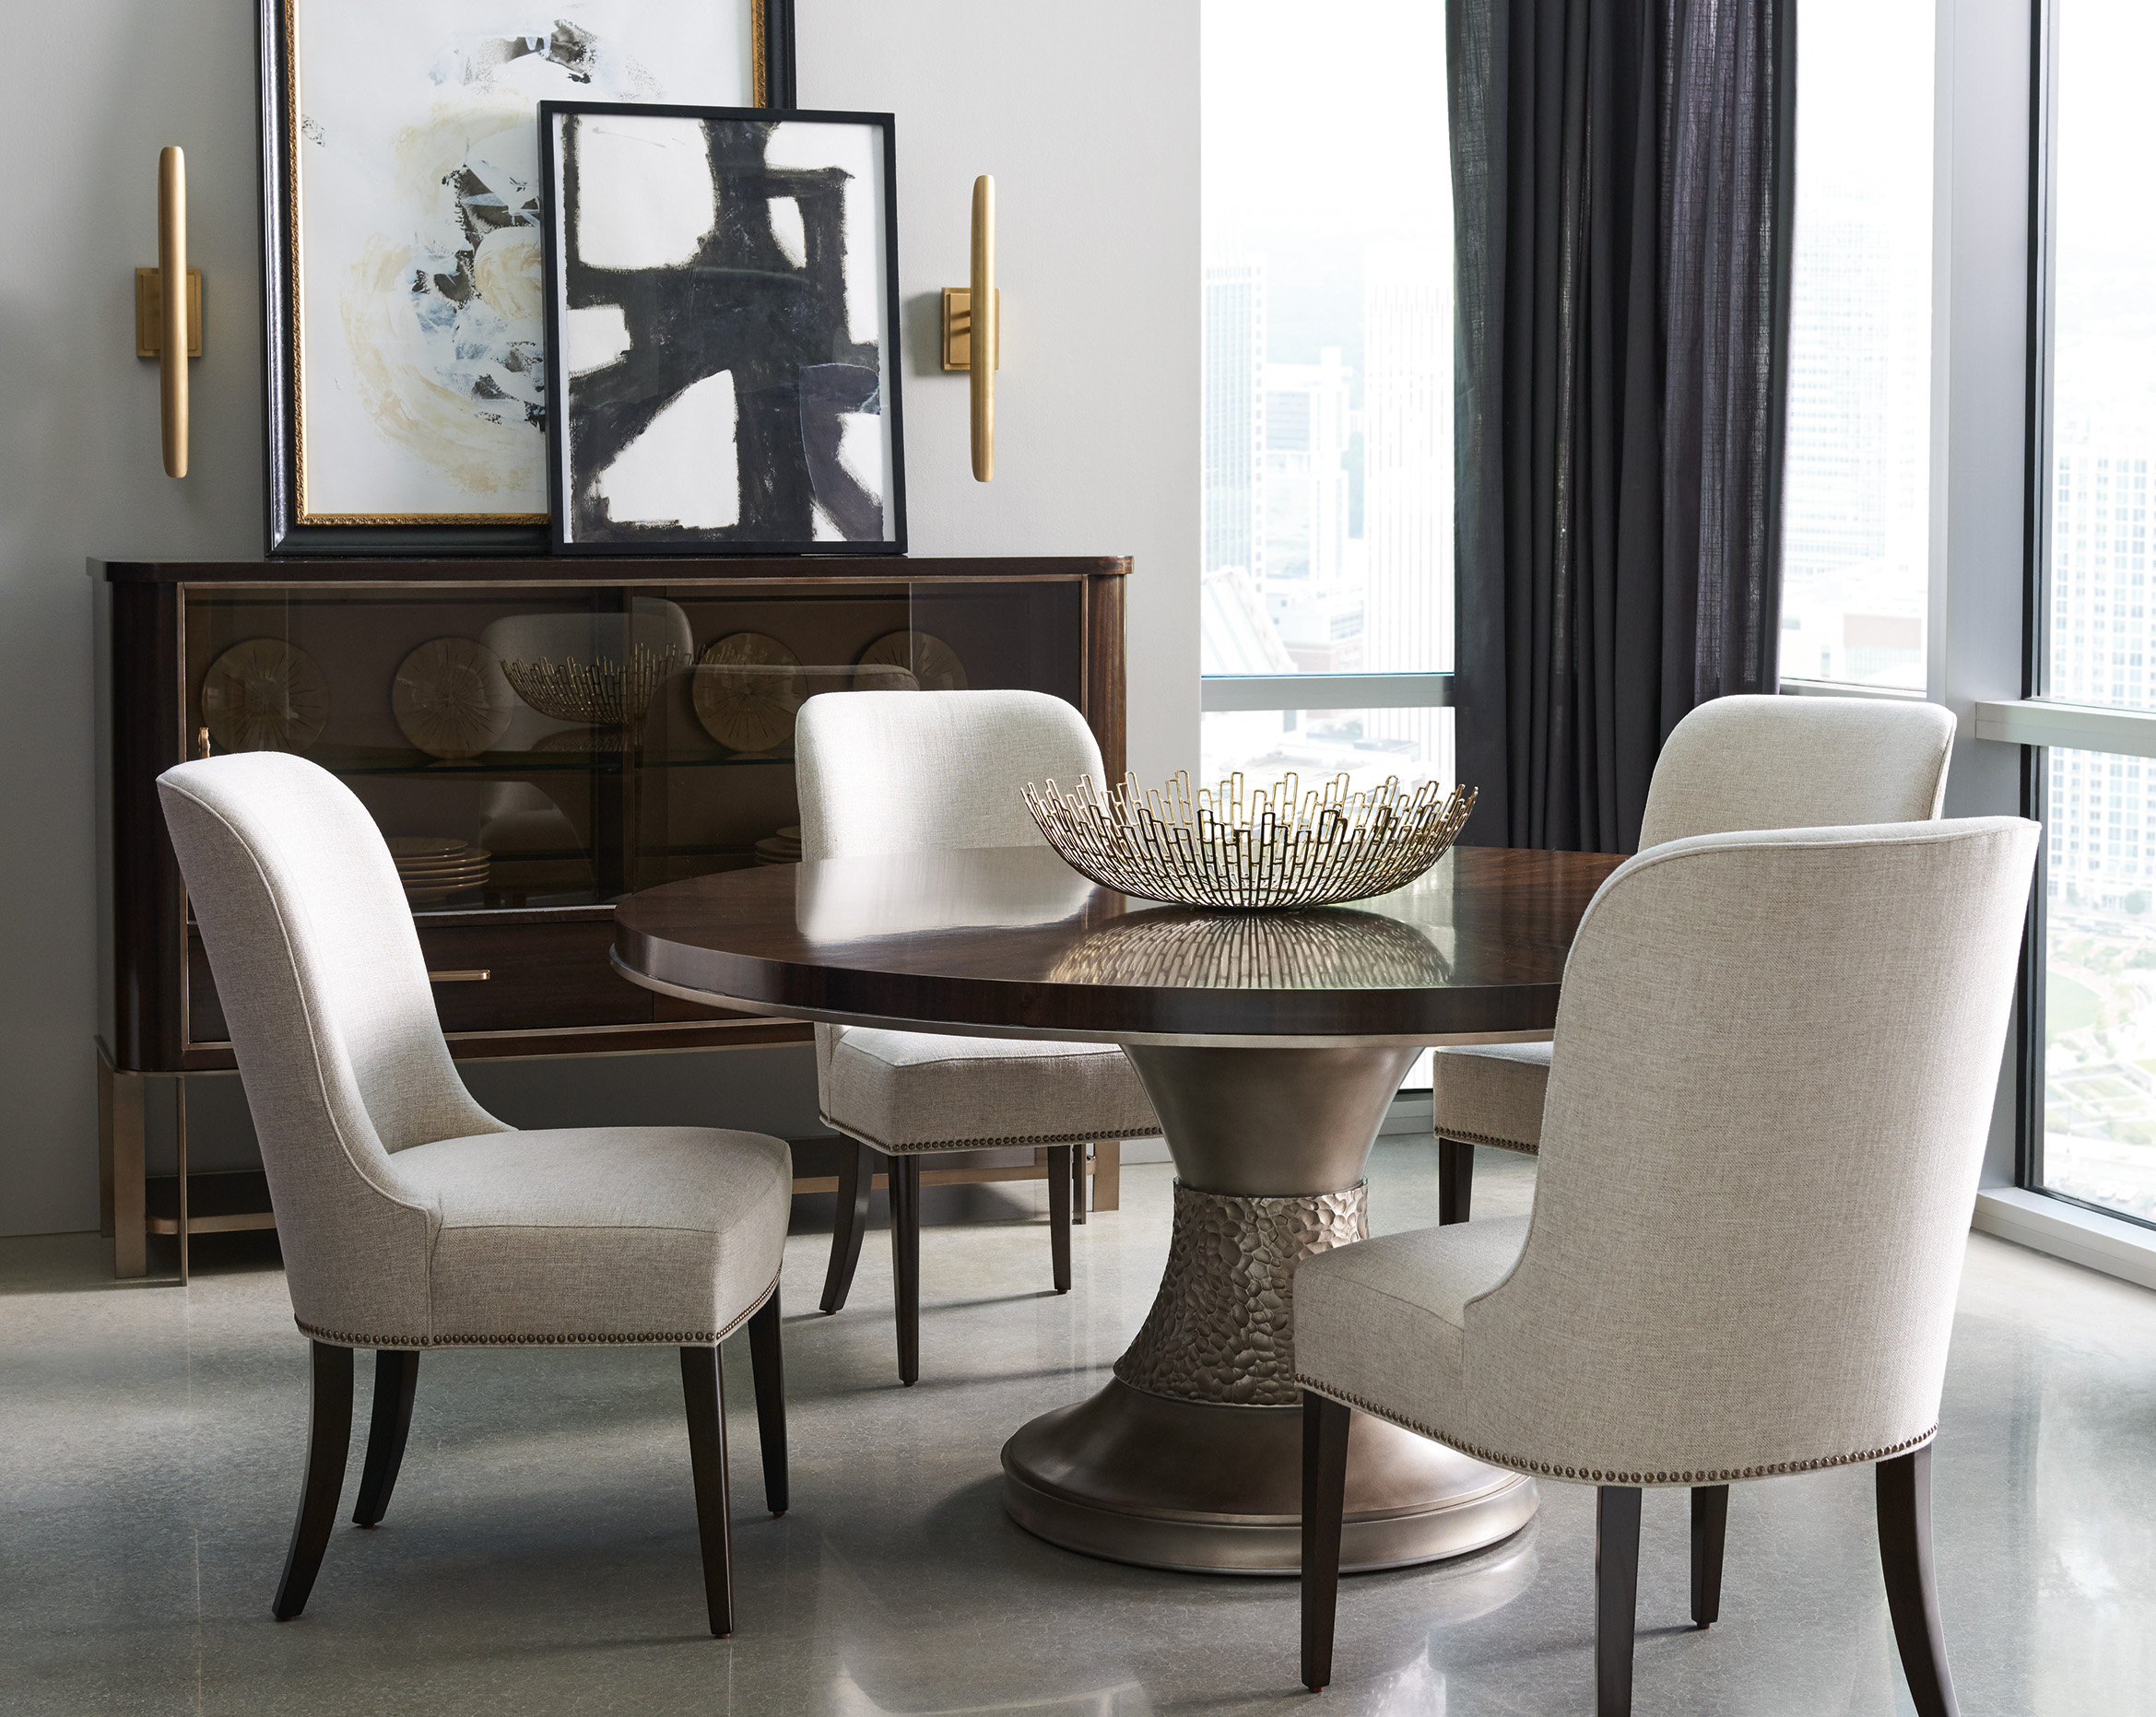 Shop Homethreads for the best selection of designer level furniture